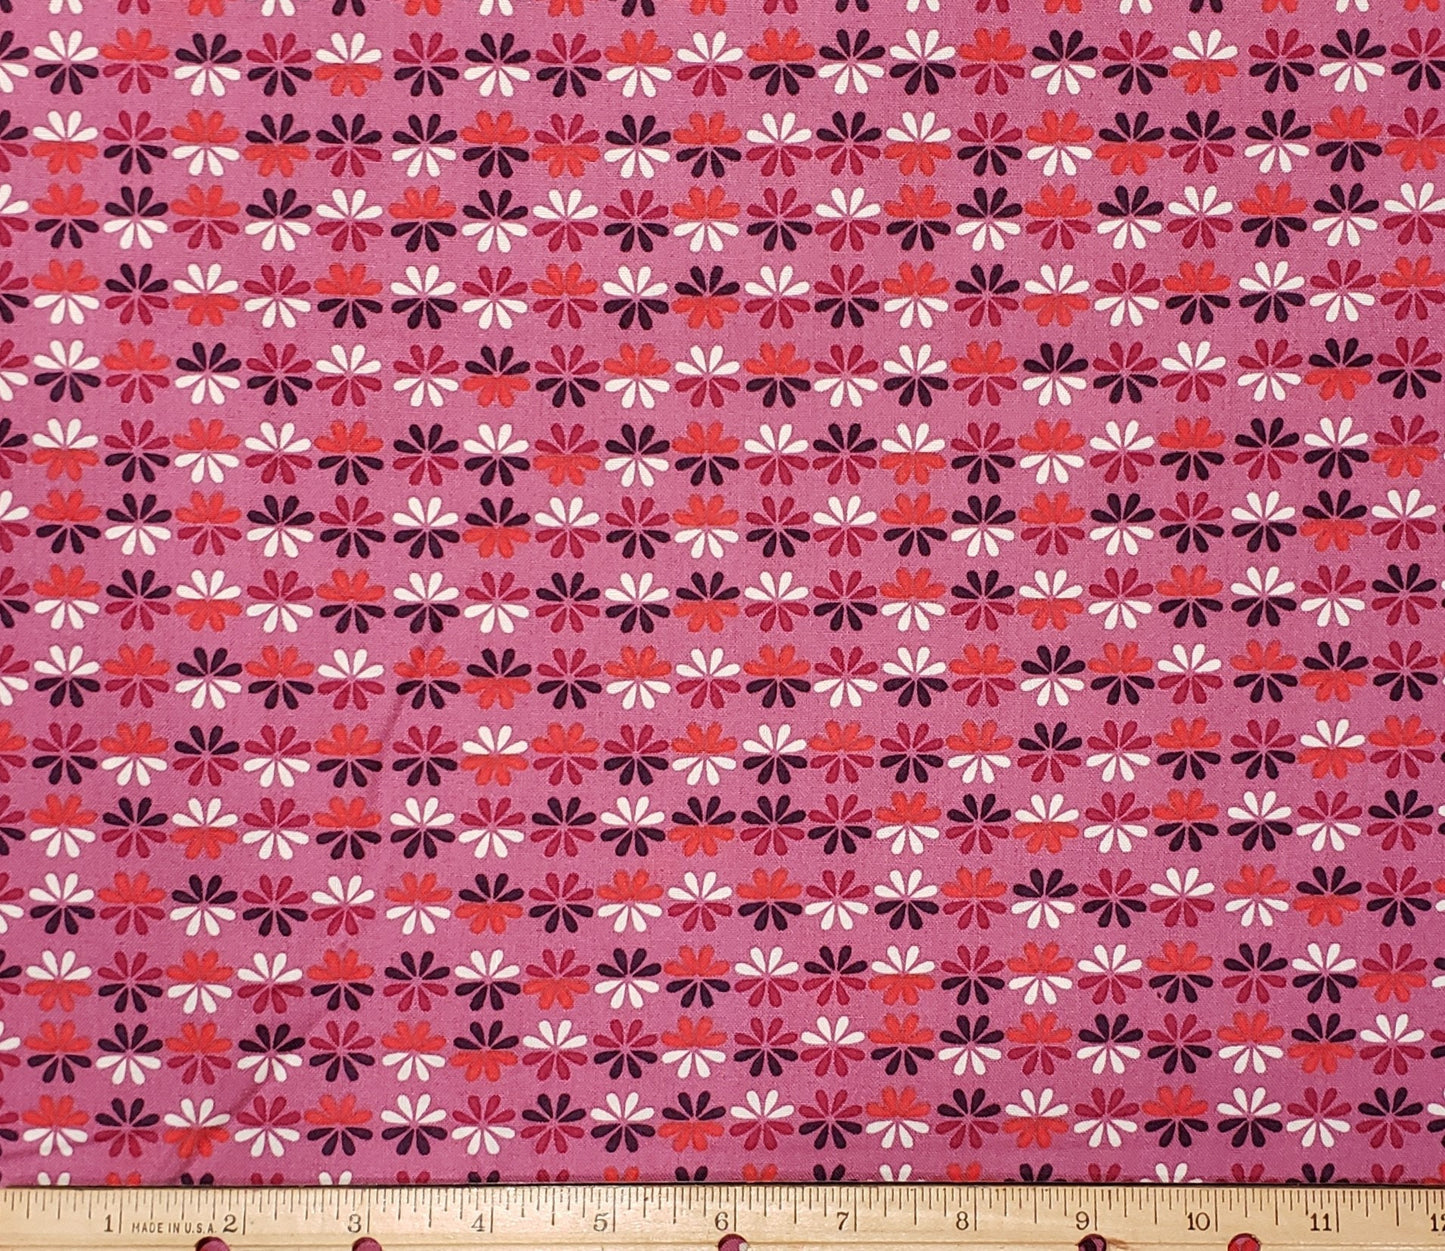 Wild & Wonderous D#1174 - Dark Pink Fabric / Red, Purple and White Retro Daisy Pattern